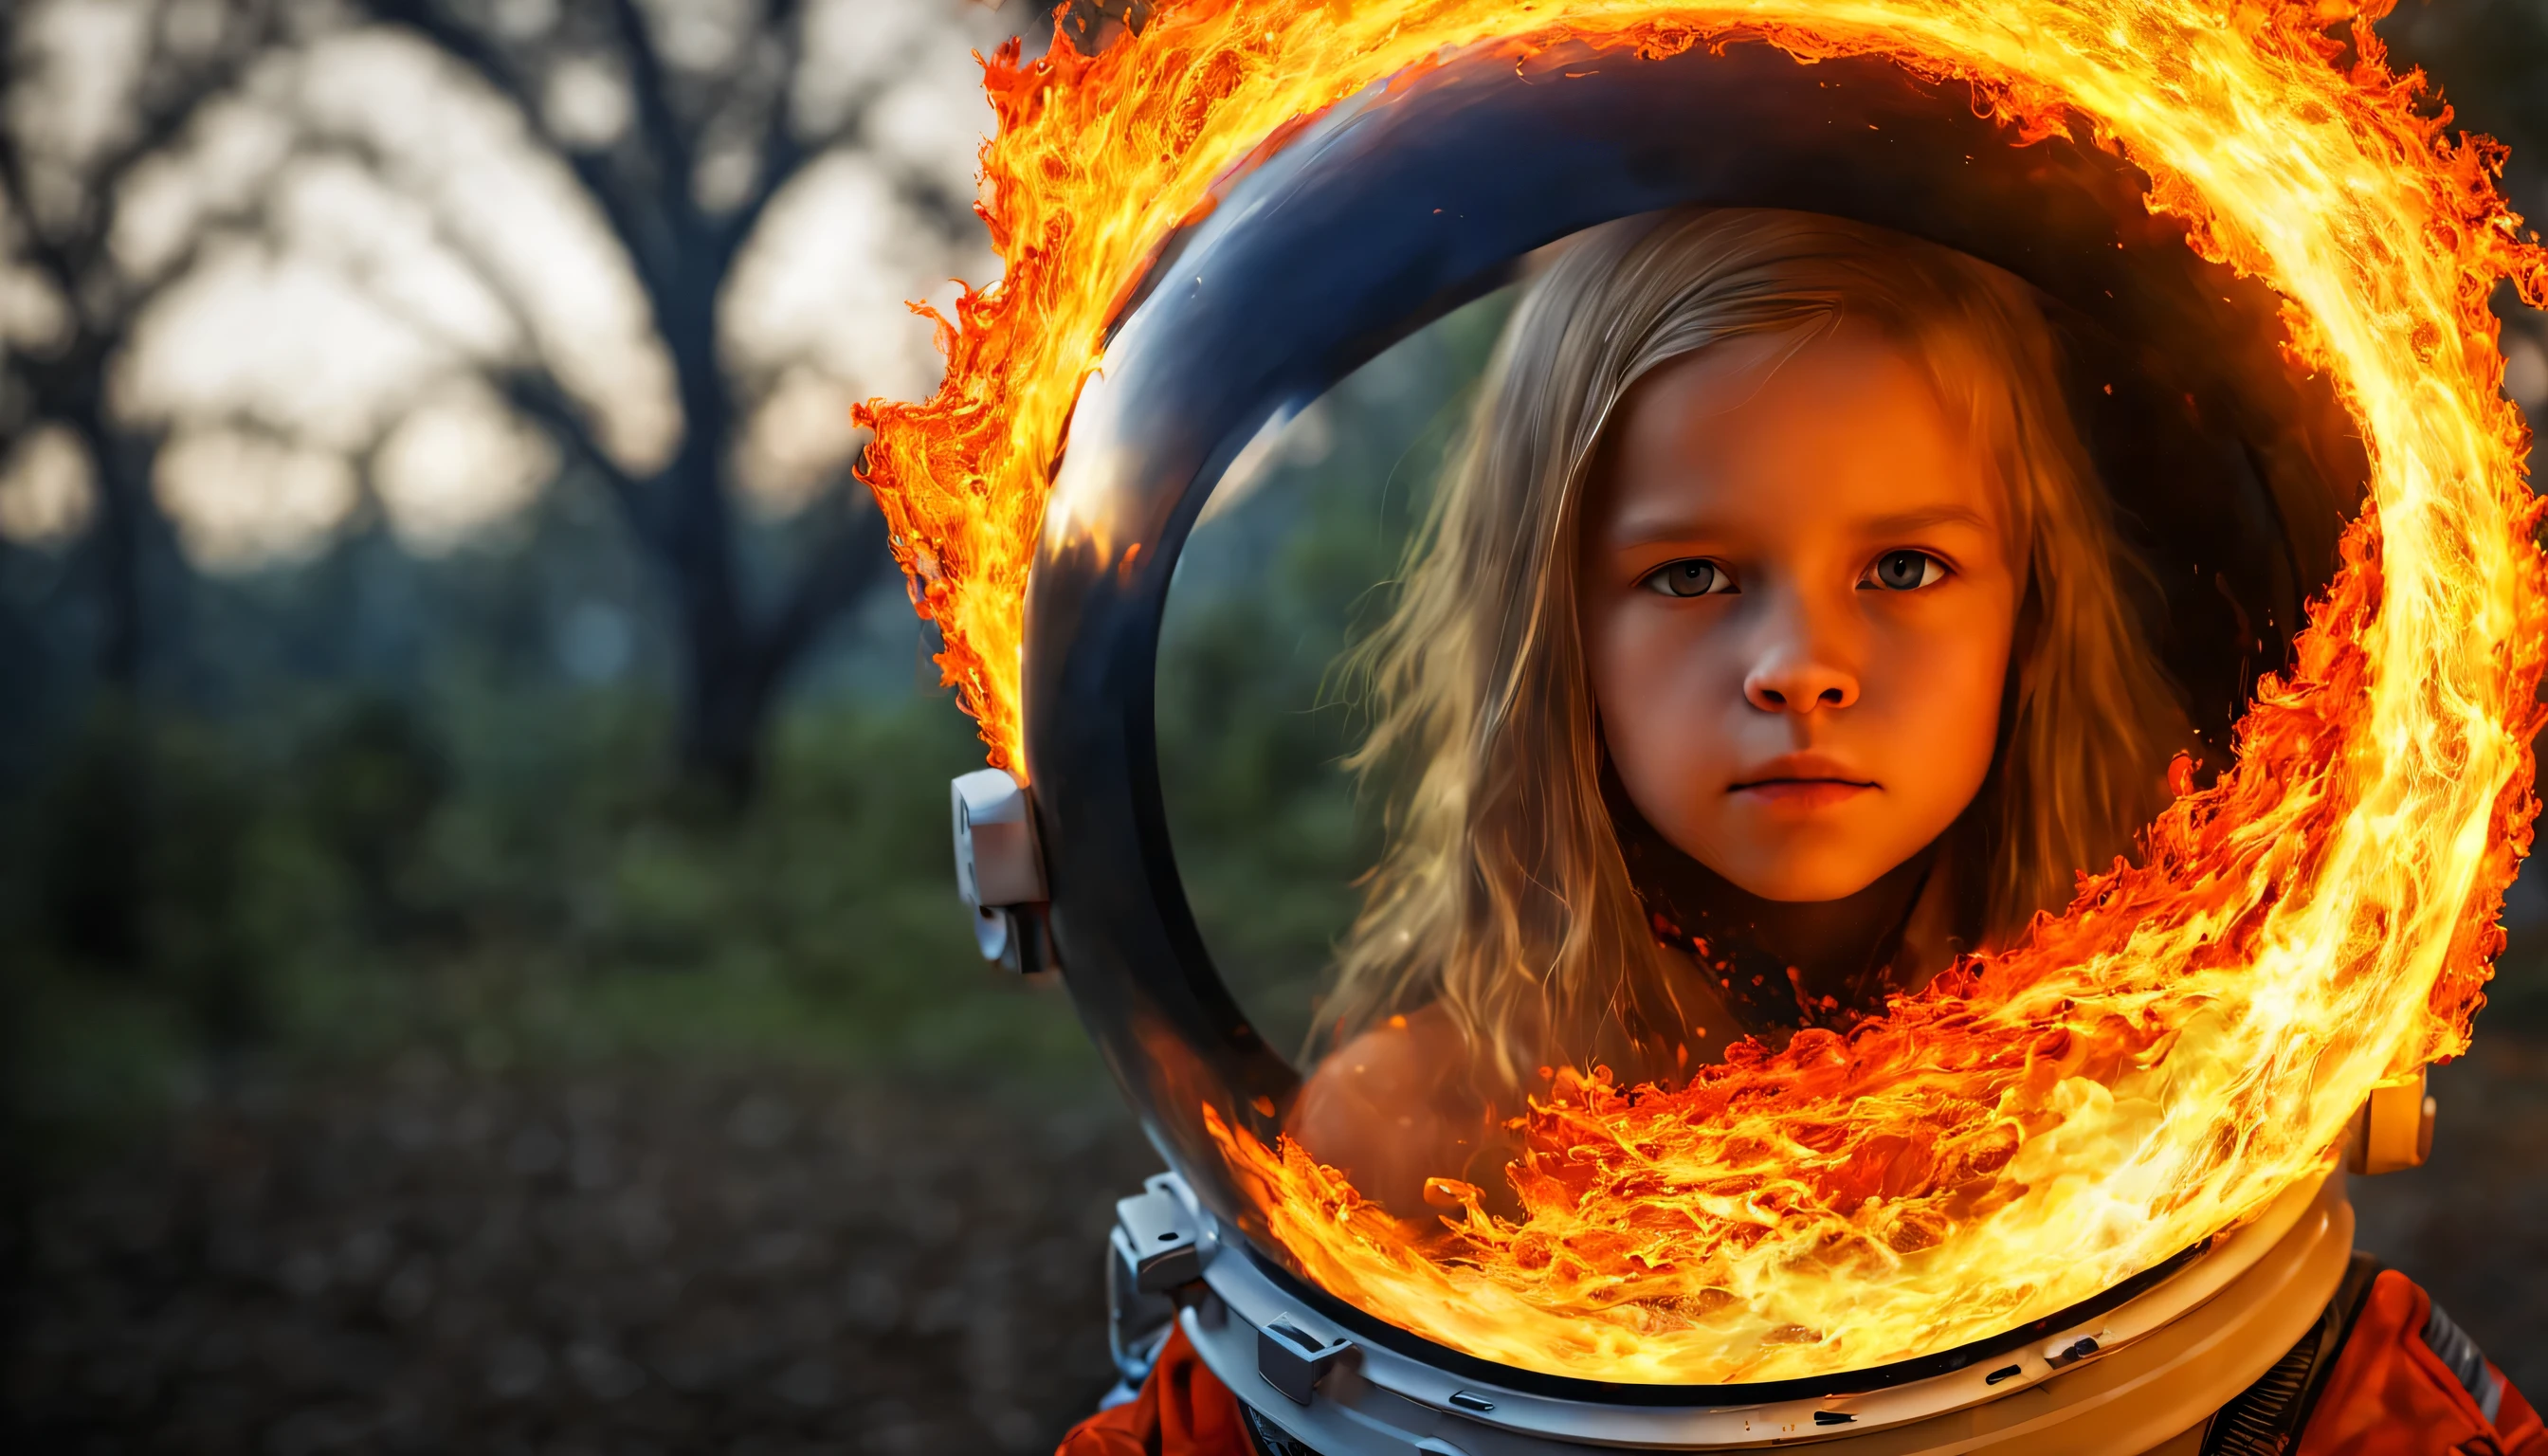 10歳の金髪ロシア人少女  , 閉じる, 肖像画, 長いブロンドの髪で, 宇宙飛行士の, 炎は円形に燃えている, 燃えるような, icon with a halo of 火, ファイアリング, 火の玉, パーティー, 背景にオレンジ色の火, 男, 火 type, (火), 黒い火の球体, フィナード, 炎地獄, インフェルノ, 火のテーマ, 火, ヘルファイア, 地獄の, パーティーjante, derretido imagem arfed de uma ガラス玉 com uma paisagem dentro, 詳細なデジタル 3D アートワーク, ボールの中の生命の木, 非常に詳細な 4K デジタル アート, 非常に詳細なデジタルアート, 様式化されたデジタルアート, 非常に詳細なデジタル絵画, ガラス玉, 非常に詳細なデジタル絵画, 非常に詳細なデジタルアート, 3Dレンダリングのビープ音, 8Kの素晴らしいアート